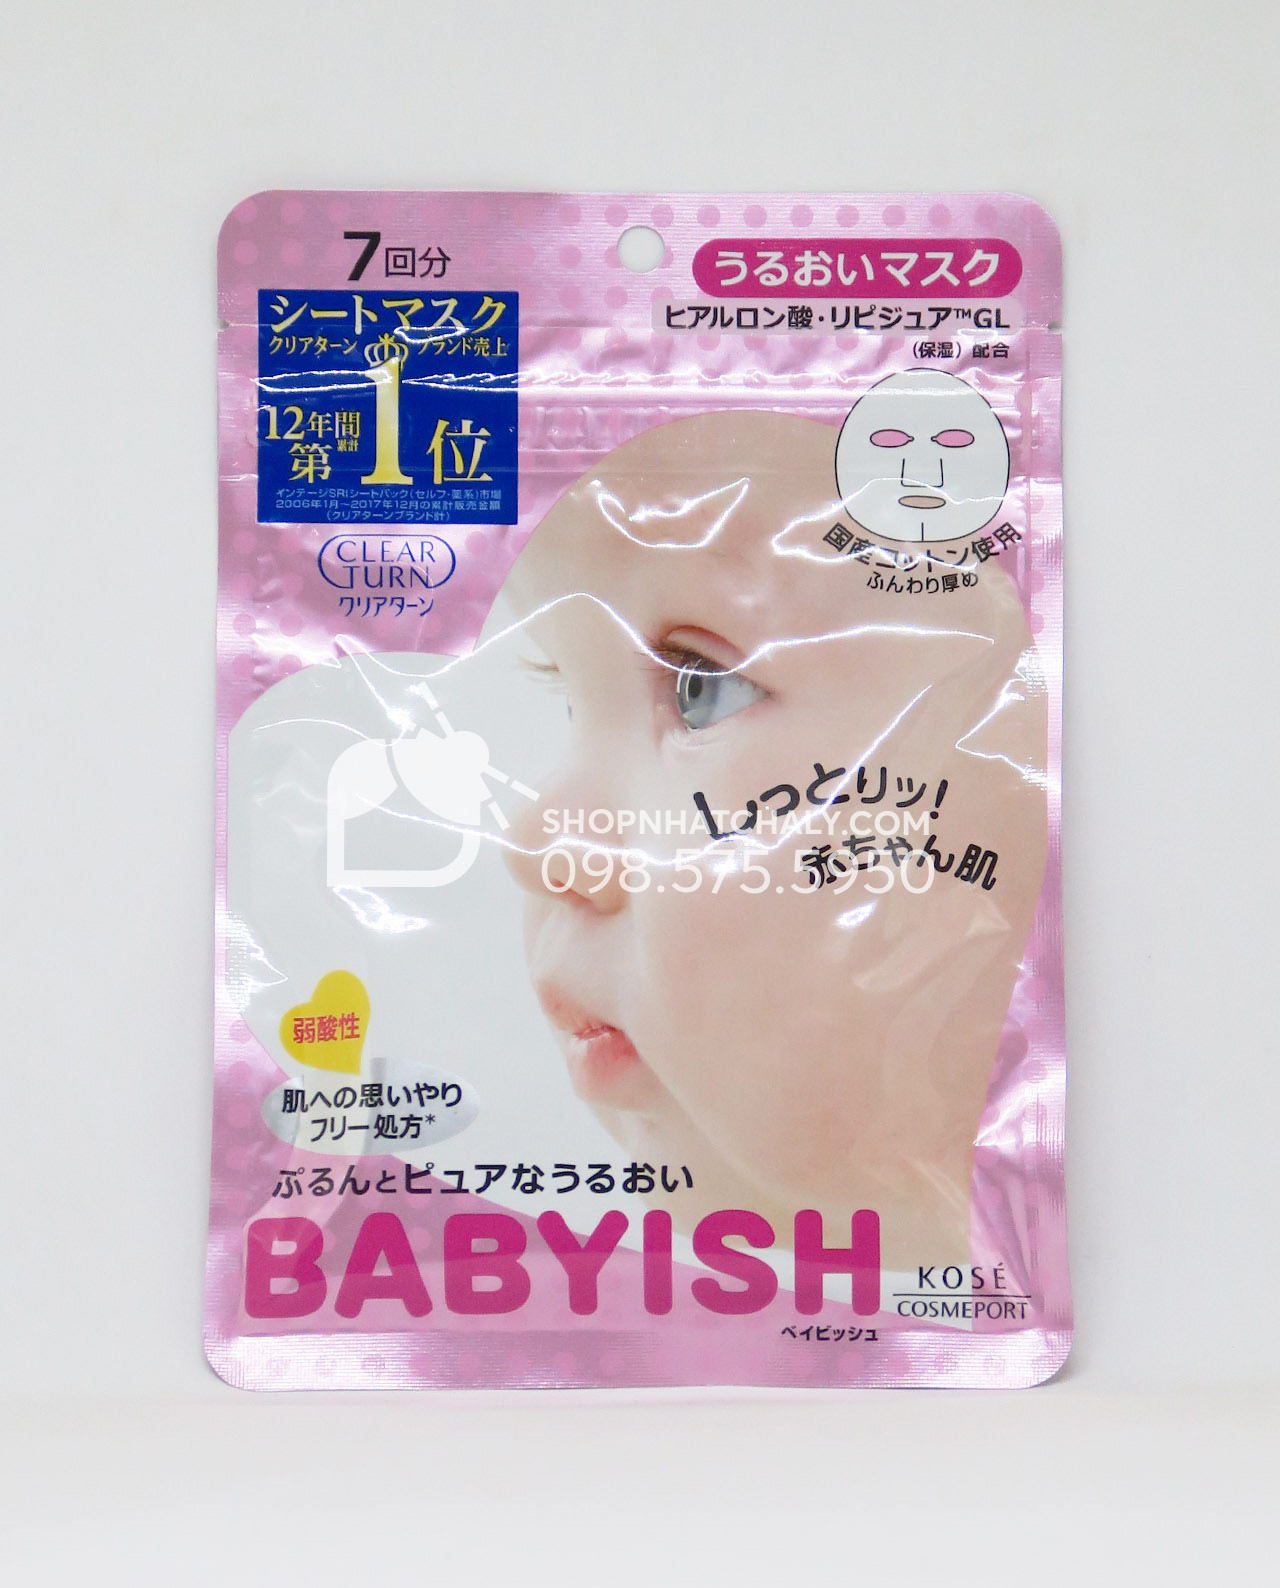 Túi mặt nạ Babyish 7 miếng màu hồng là dòng bán chạy nhất trong các loại mặt nạ babyish mask của Nhât